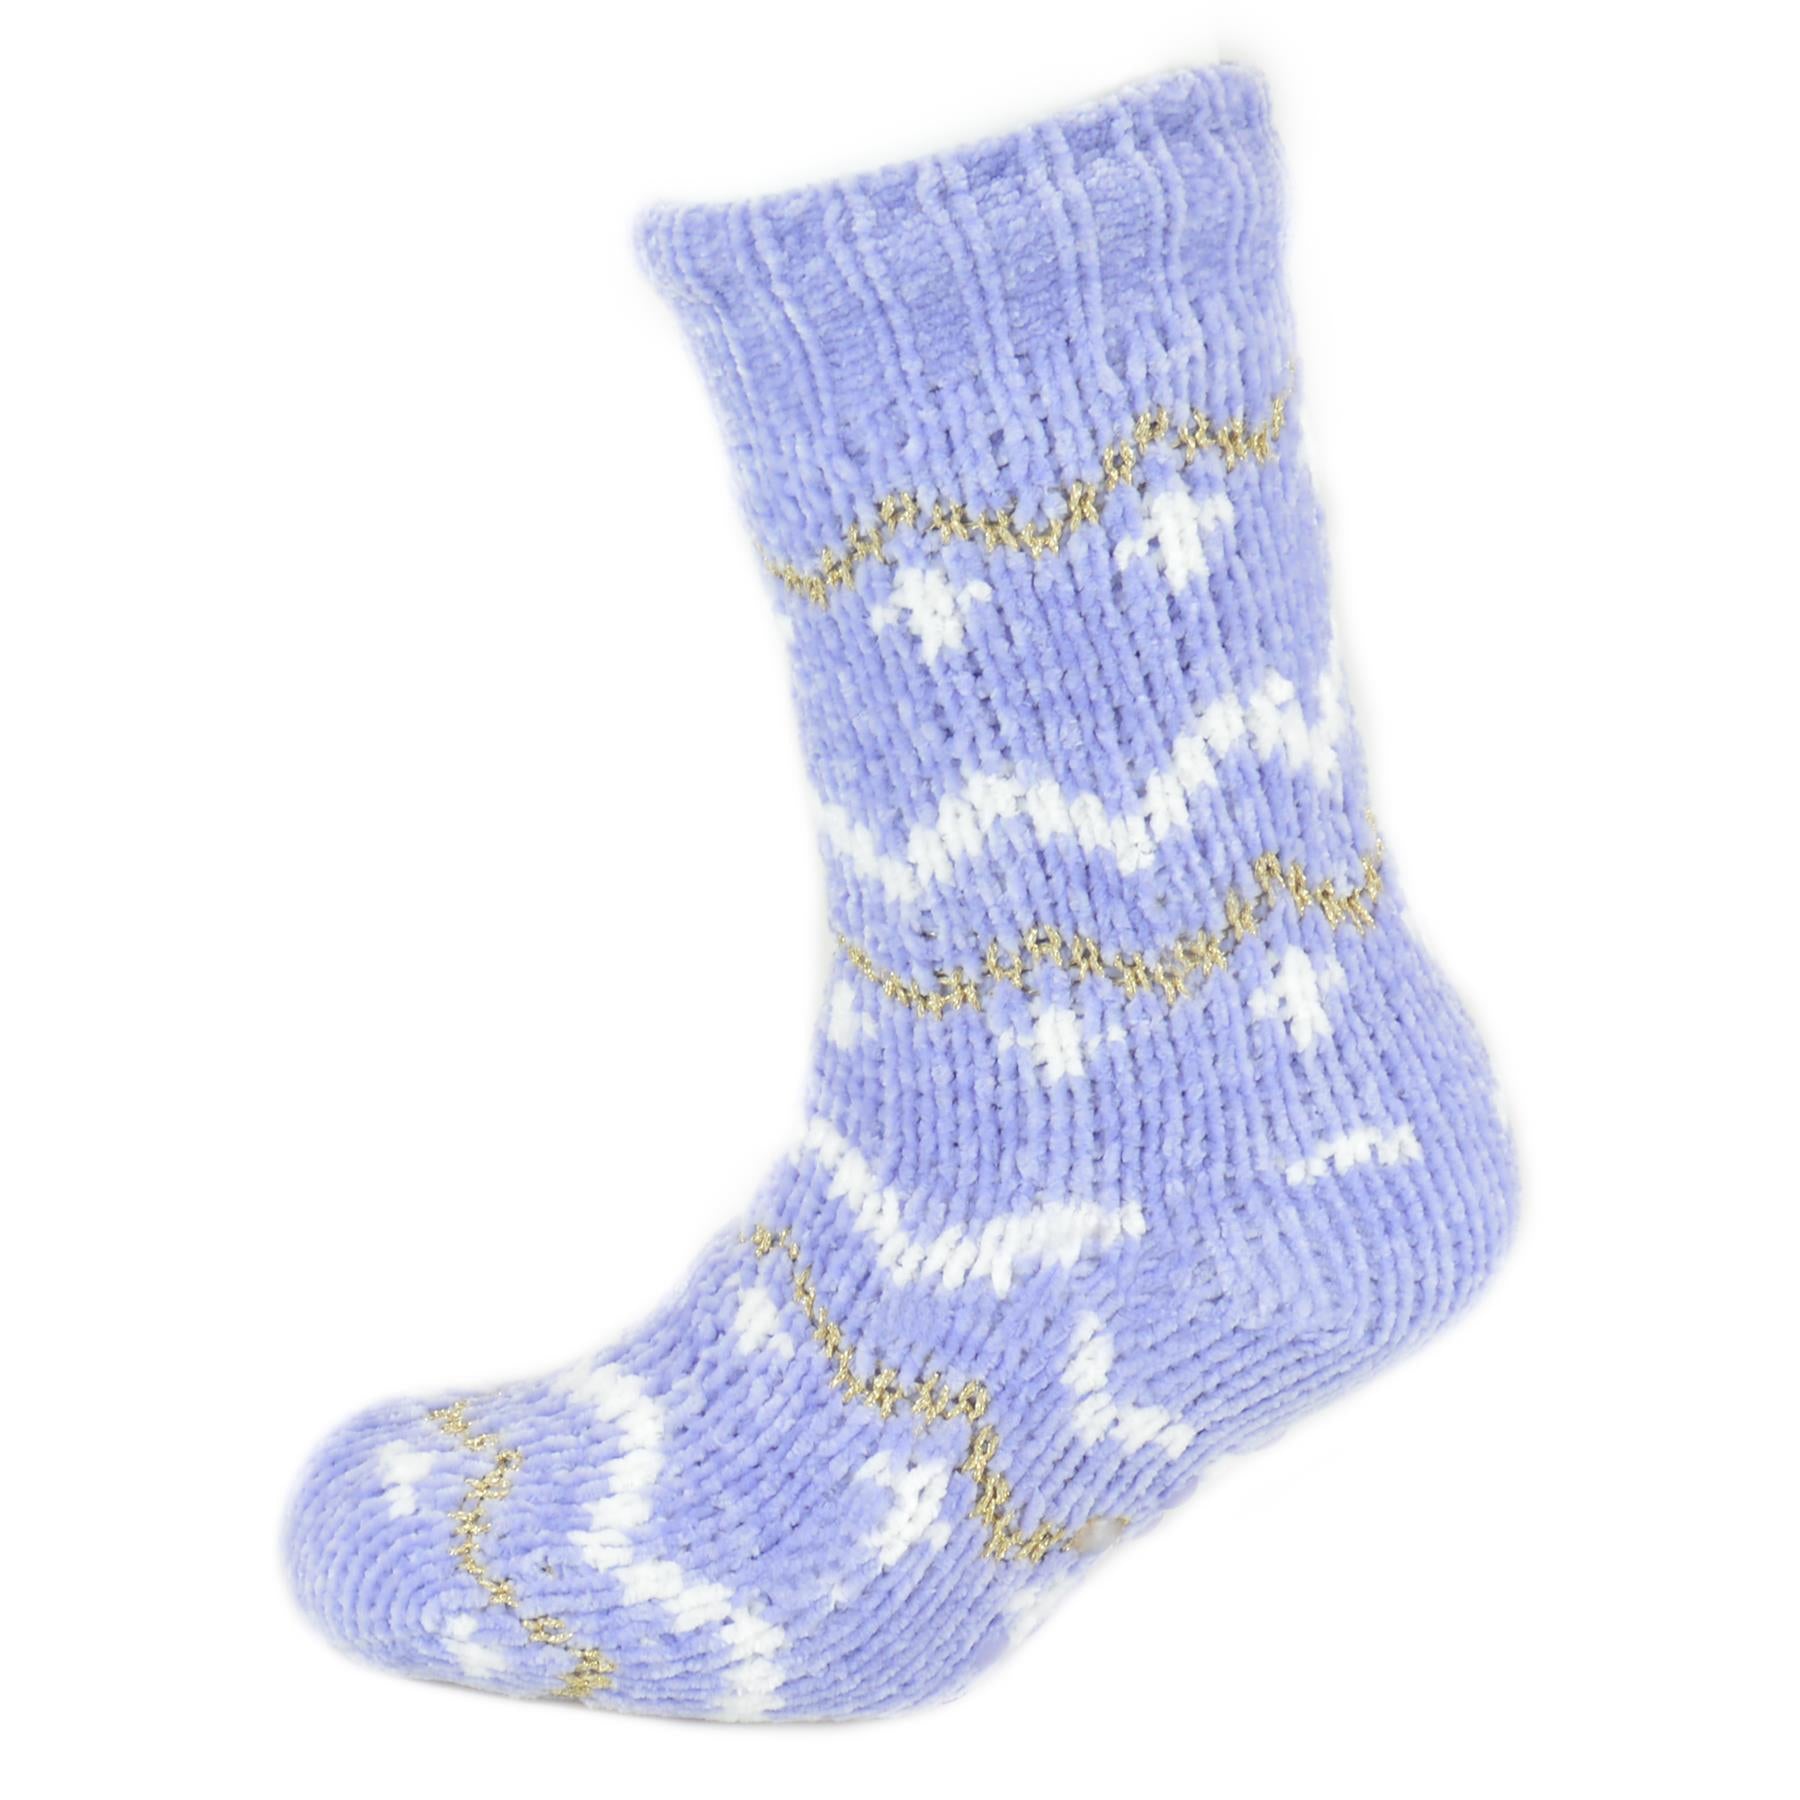 Knitted Design Slipper Socks